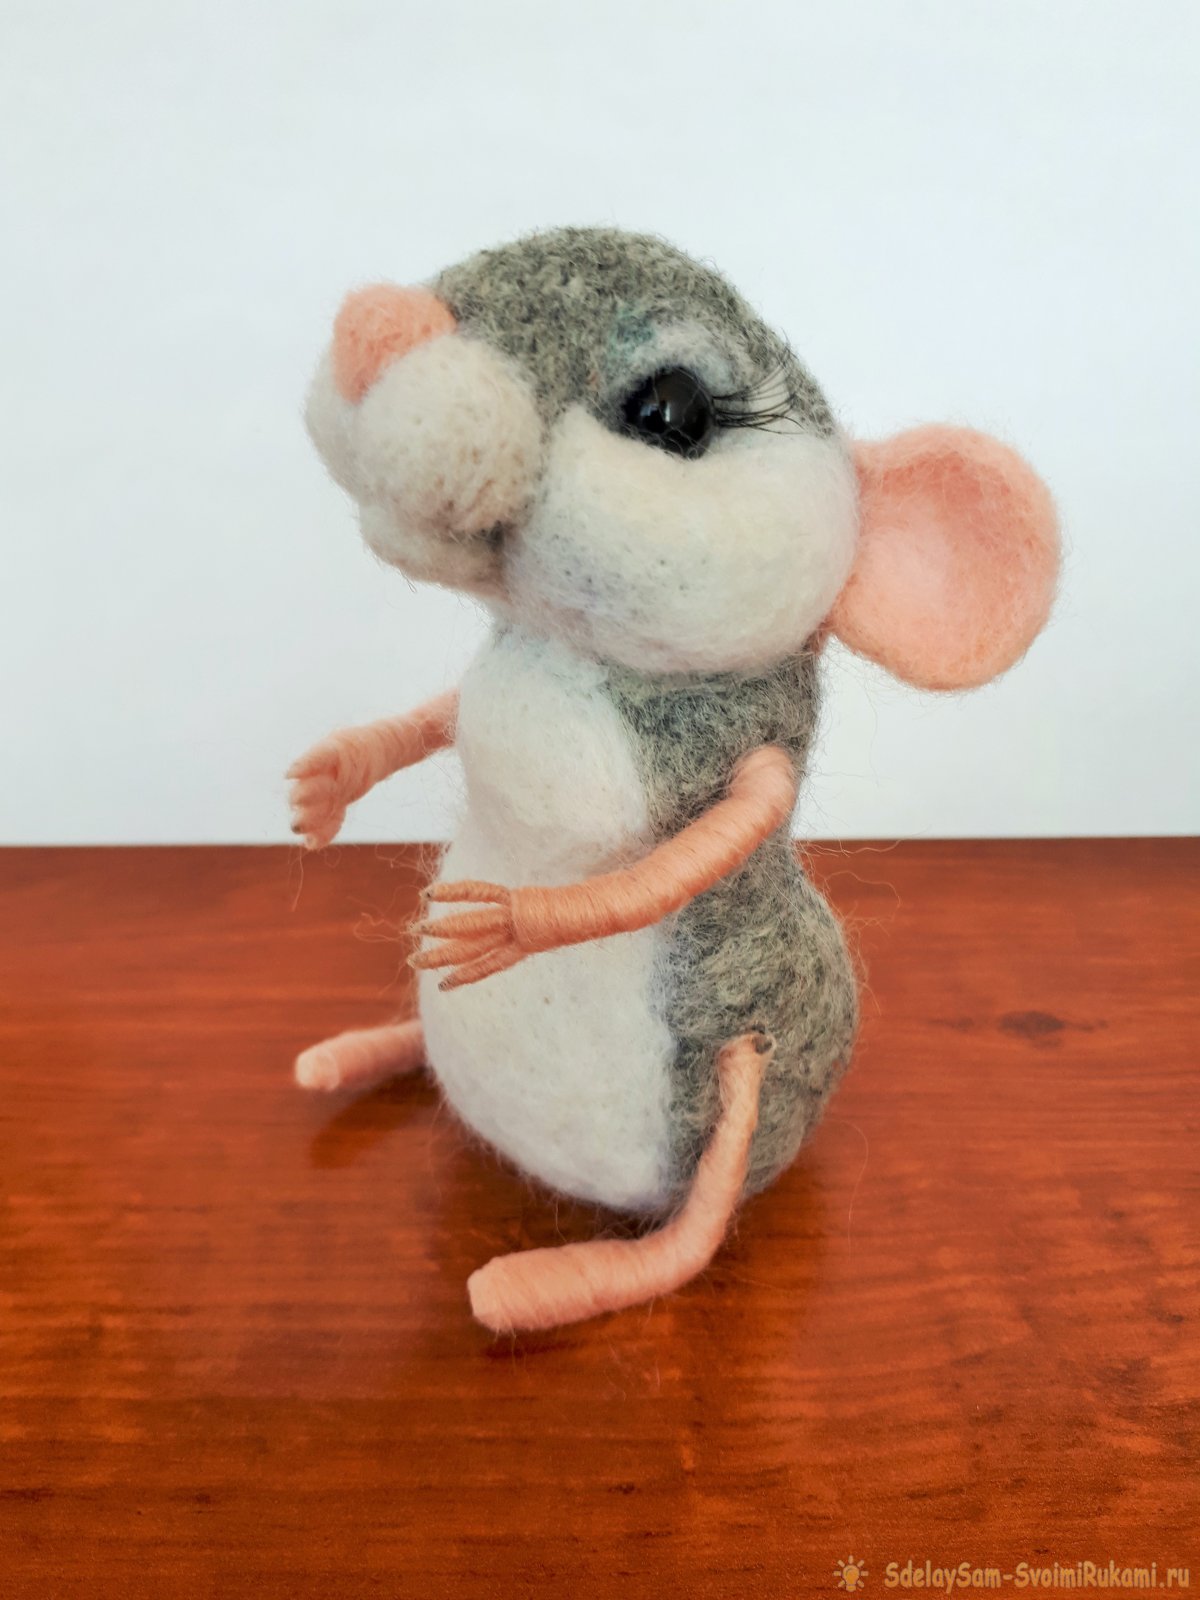 Игрушки из шерсти: Мышка - символ 2020 года